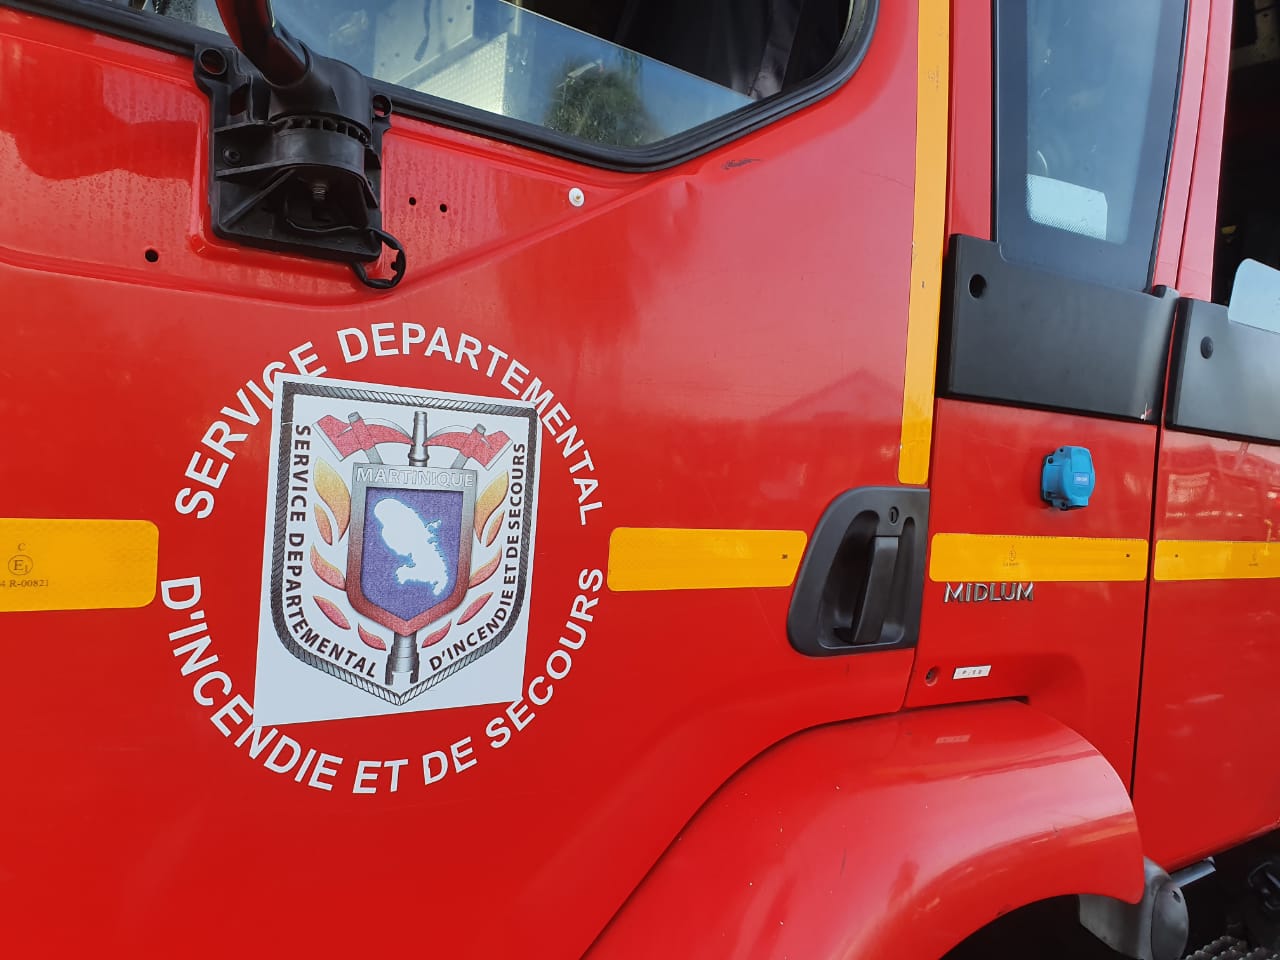     22 nouveaux pompiers professionnels en Martinique

